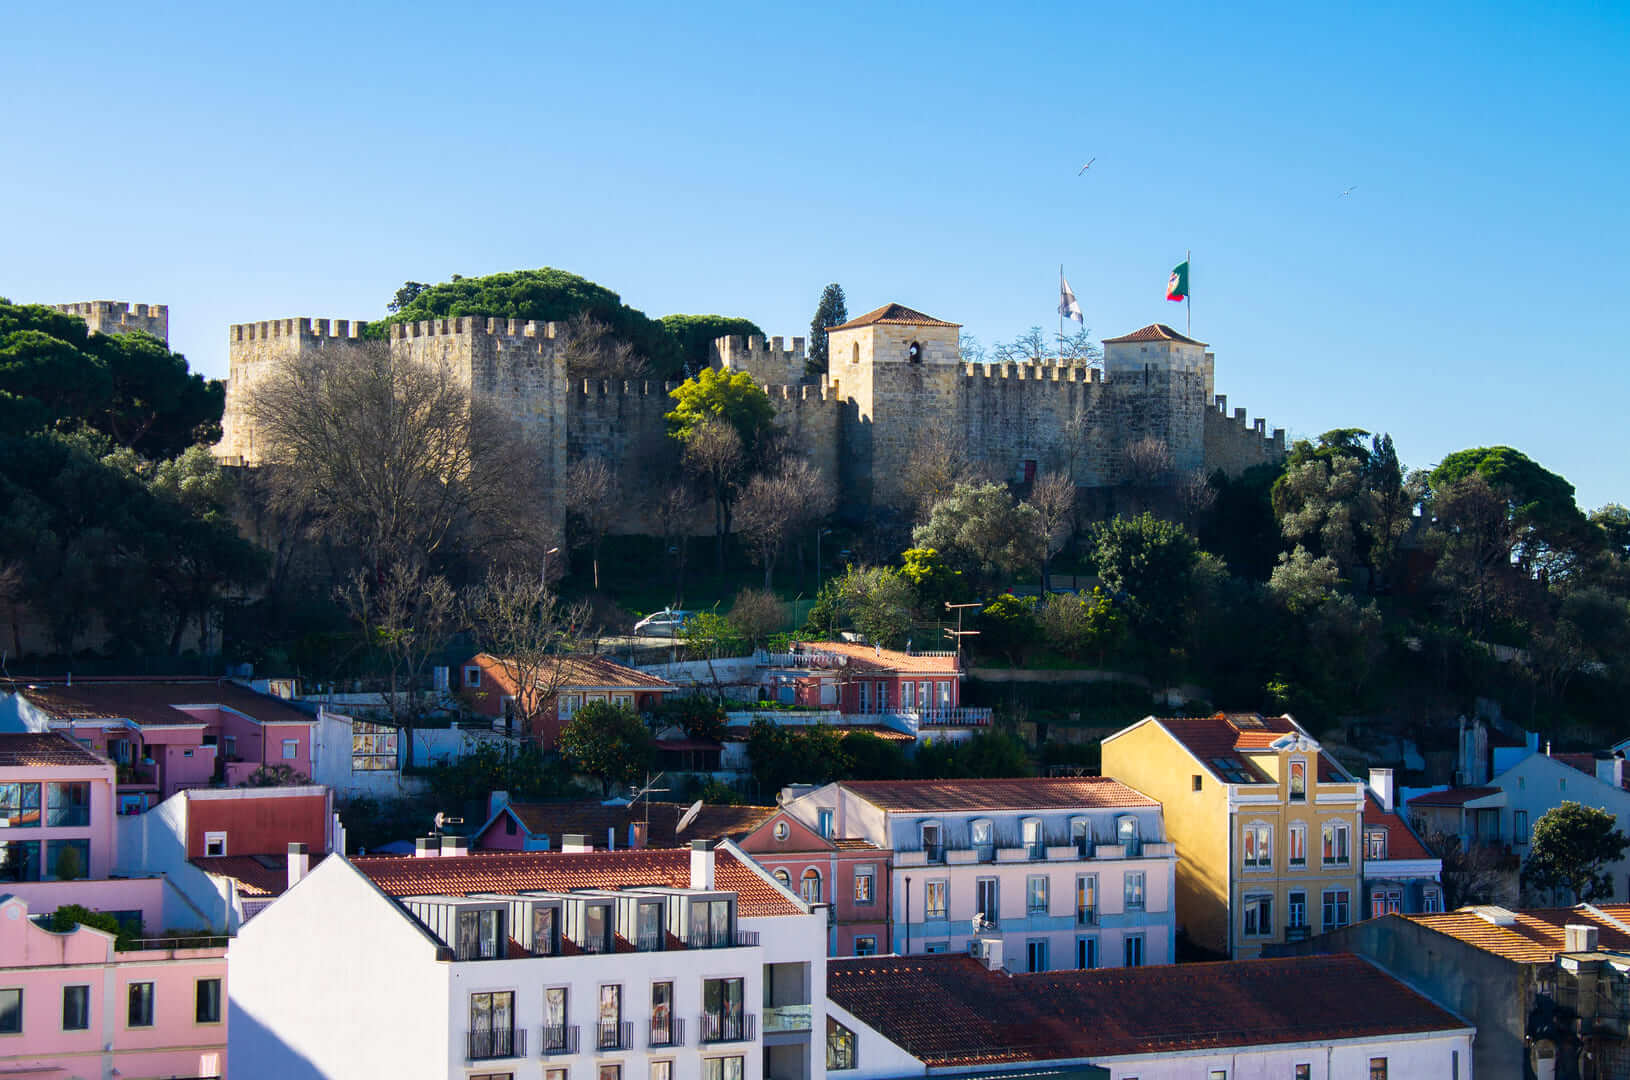 Une vue sur les bâtiments colorés, les toits et les jardins de Lisbonne, Portugal, vers l'imposant Castelo de S. Jorge (Château St George) lors d'une journée ensoleillée.